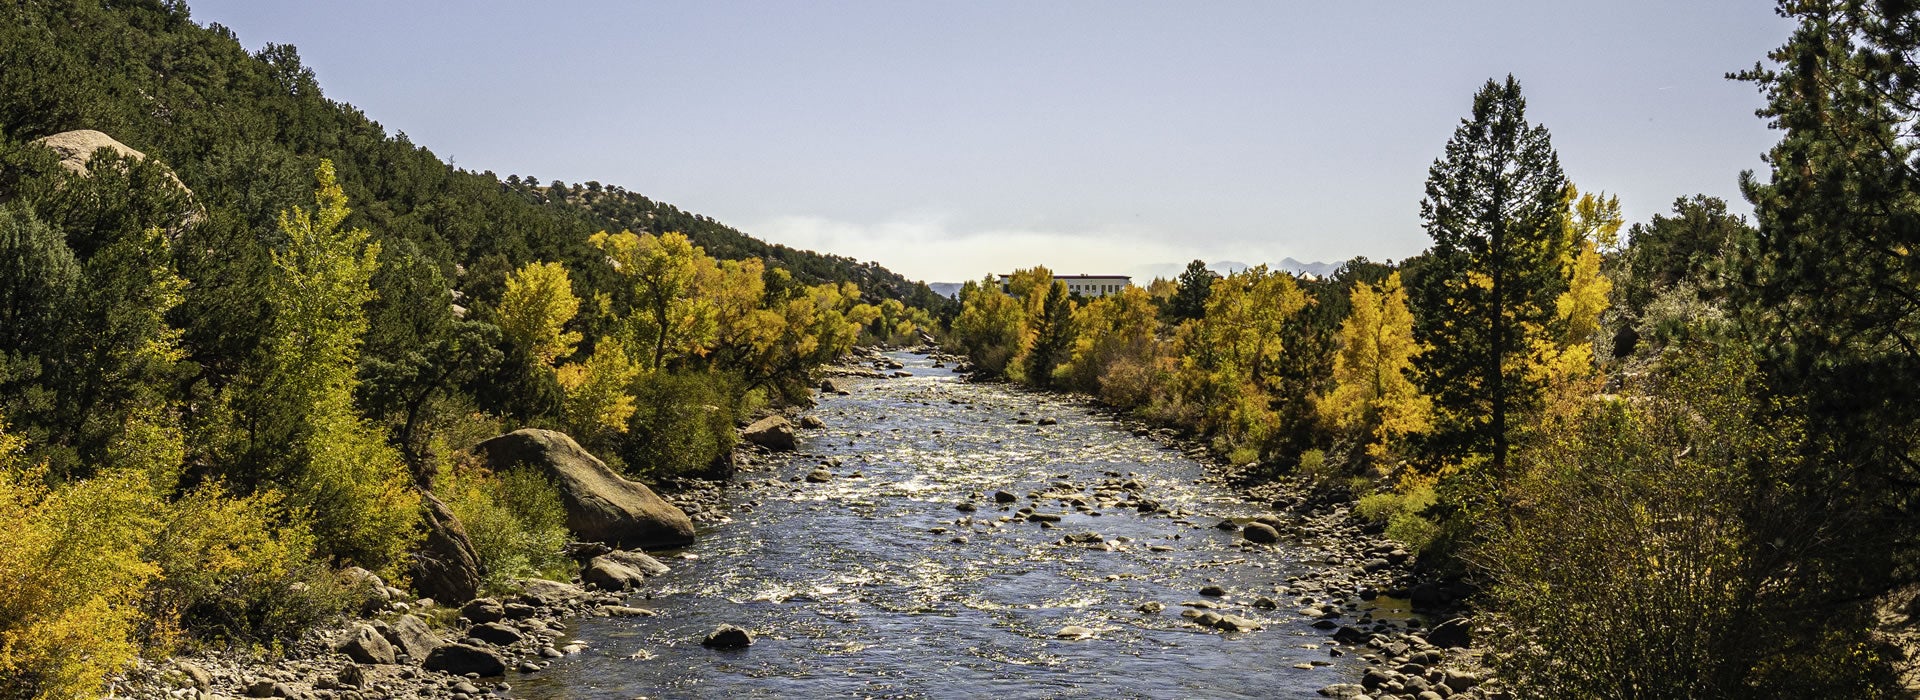 View of river in Buena Vista, Colorado